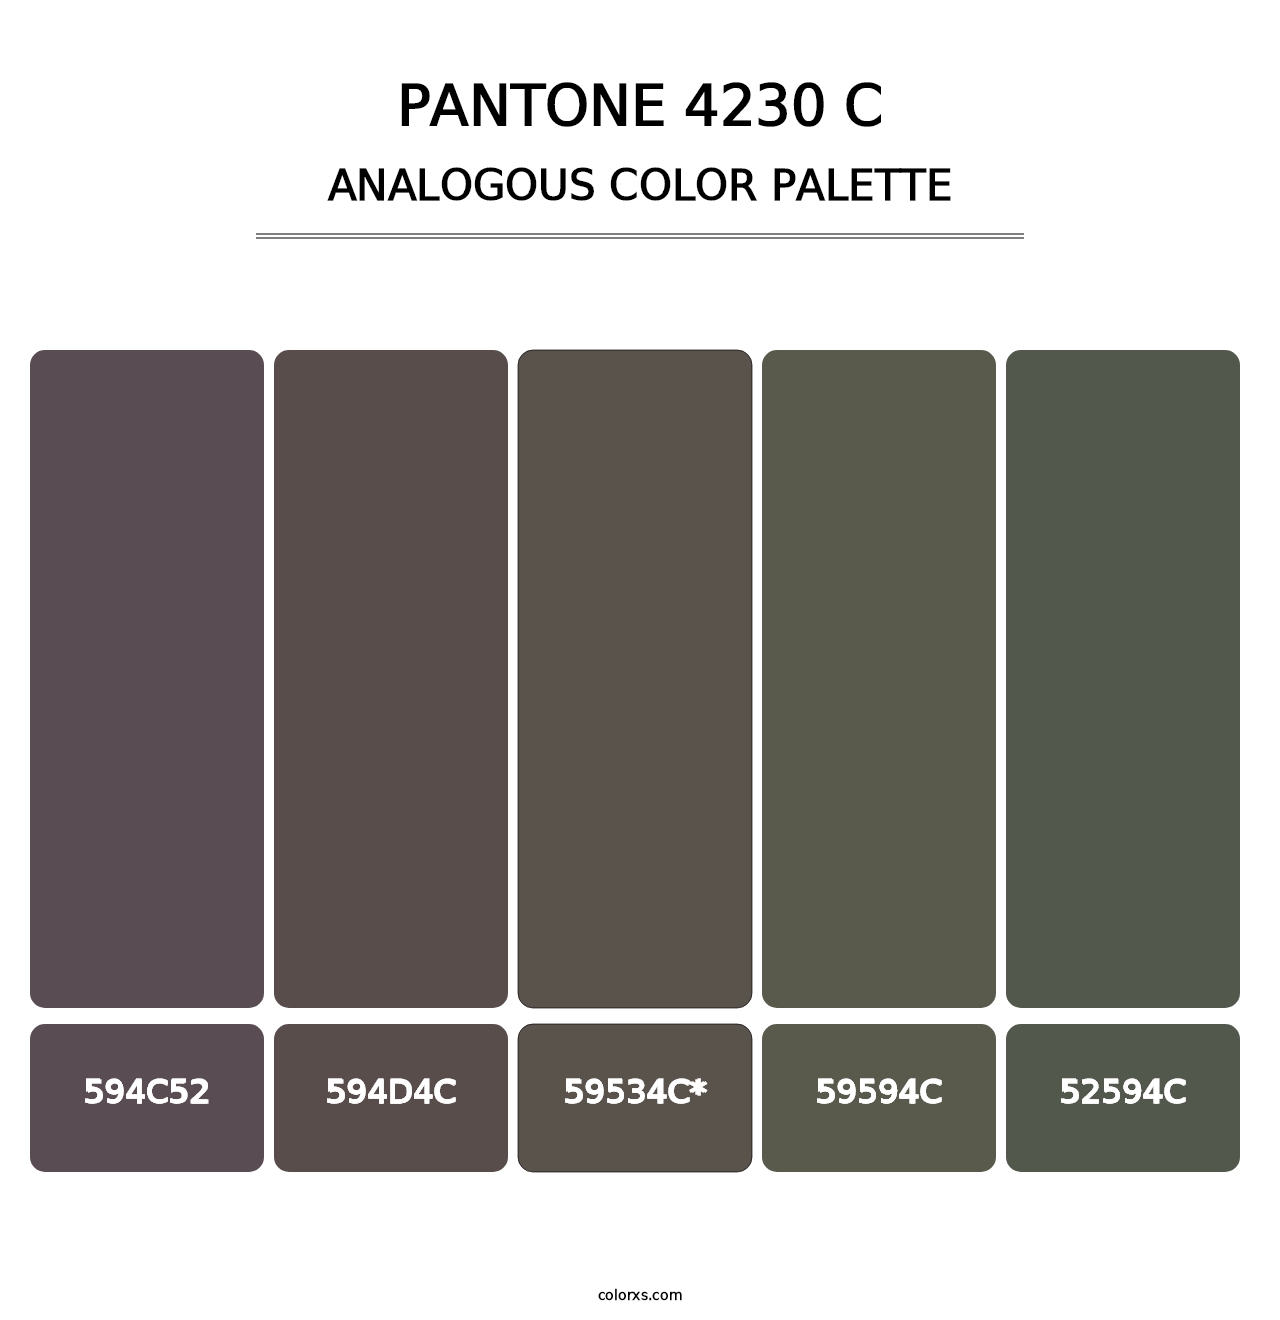 PANTONE 4230 C - Analogous Color Palette